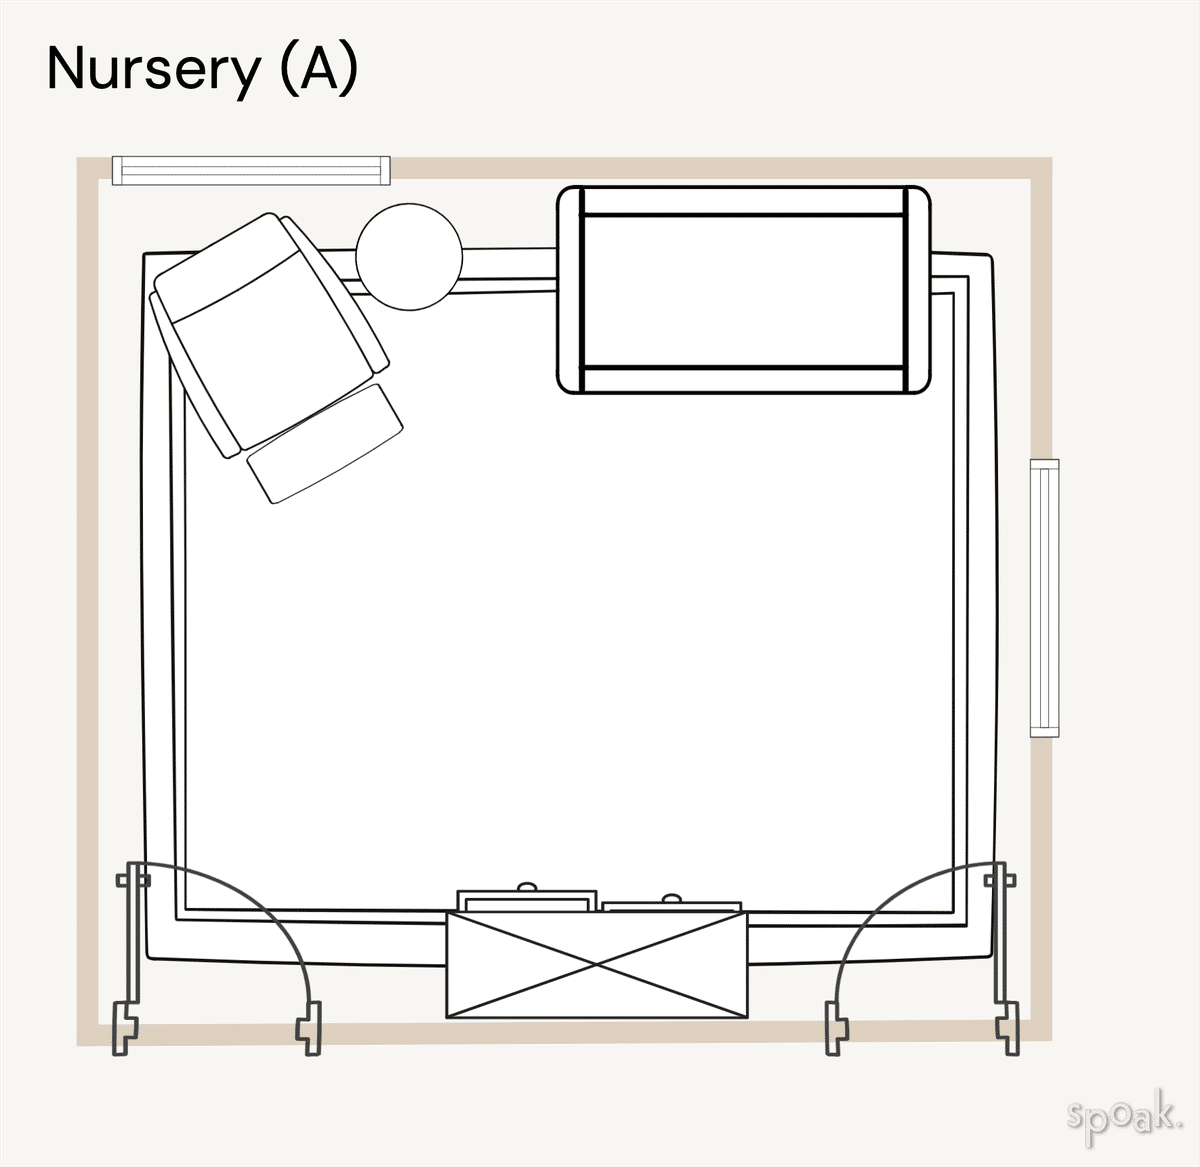 Nursery Layout designed by Liz Nevil-Smith